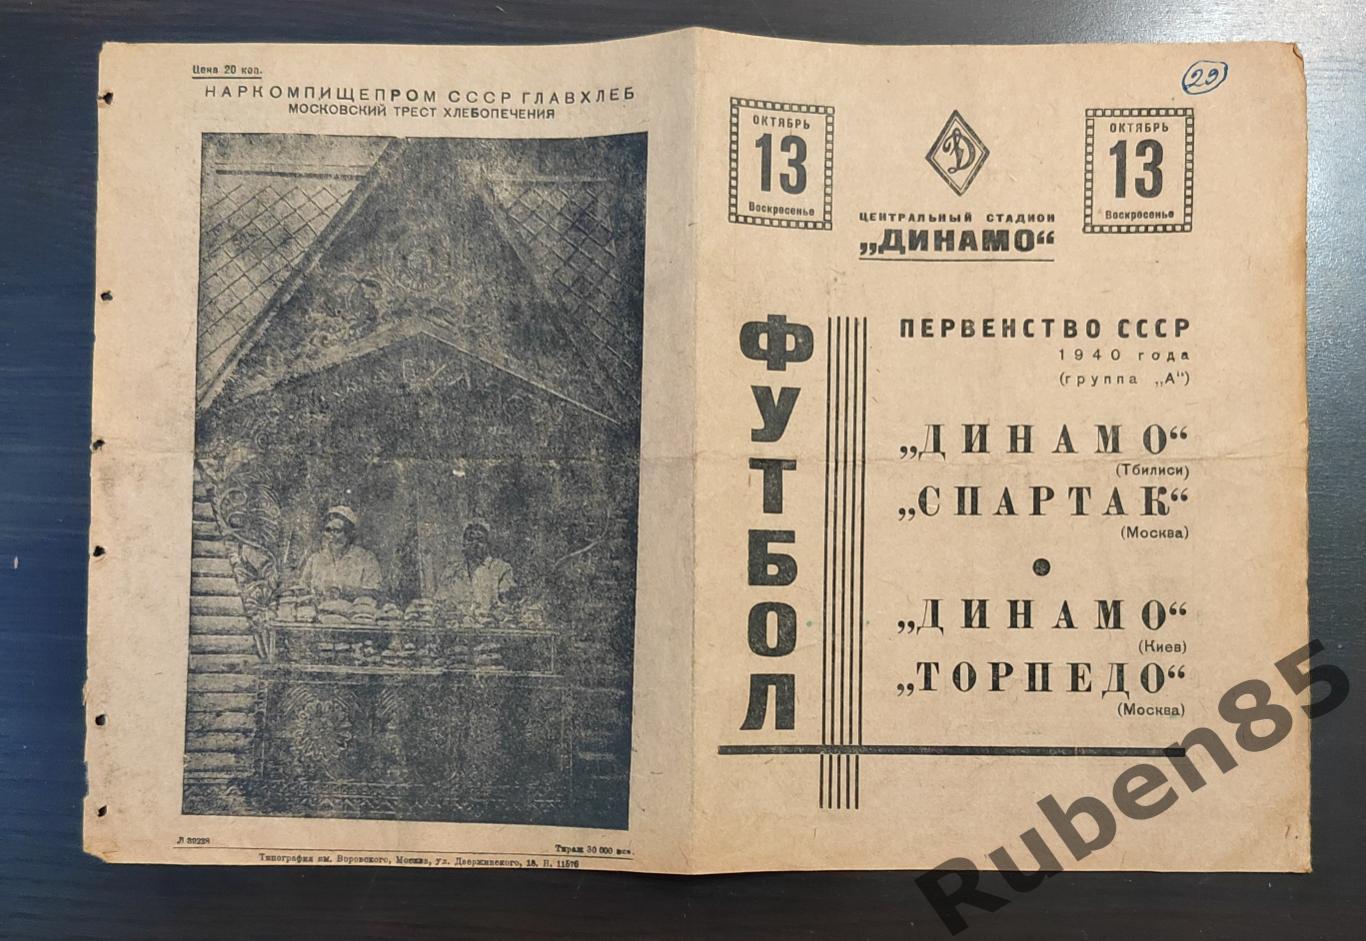 Футбол. Программа Спартак Москва - Динамо Тбилиси + Торпедо - Динамо Киев 1940